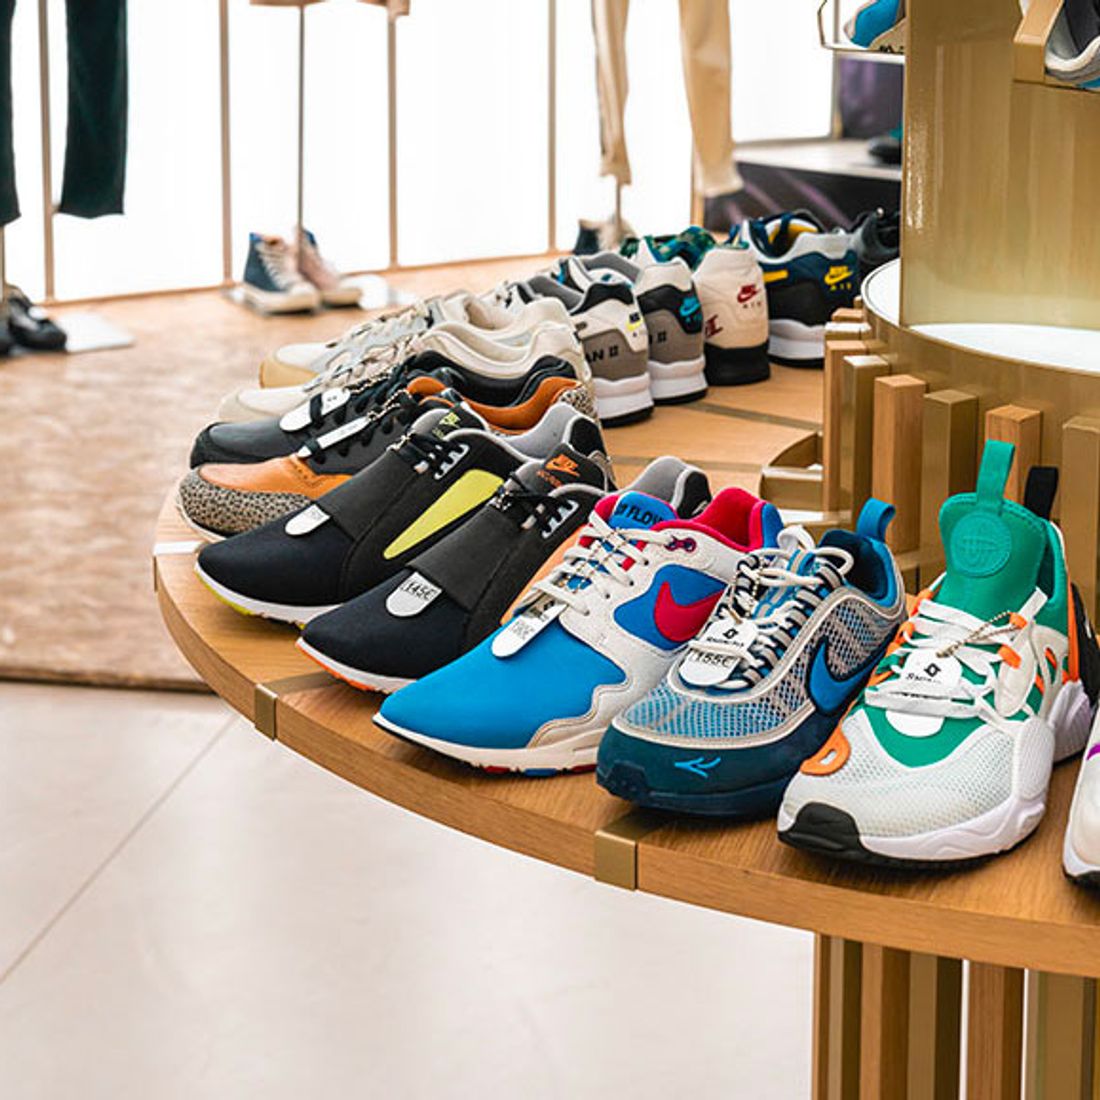 Jaar Leer kamp Sneaker Stores You Must Visit in Paris - Sneaker Freaker